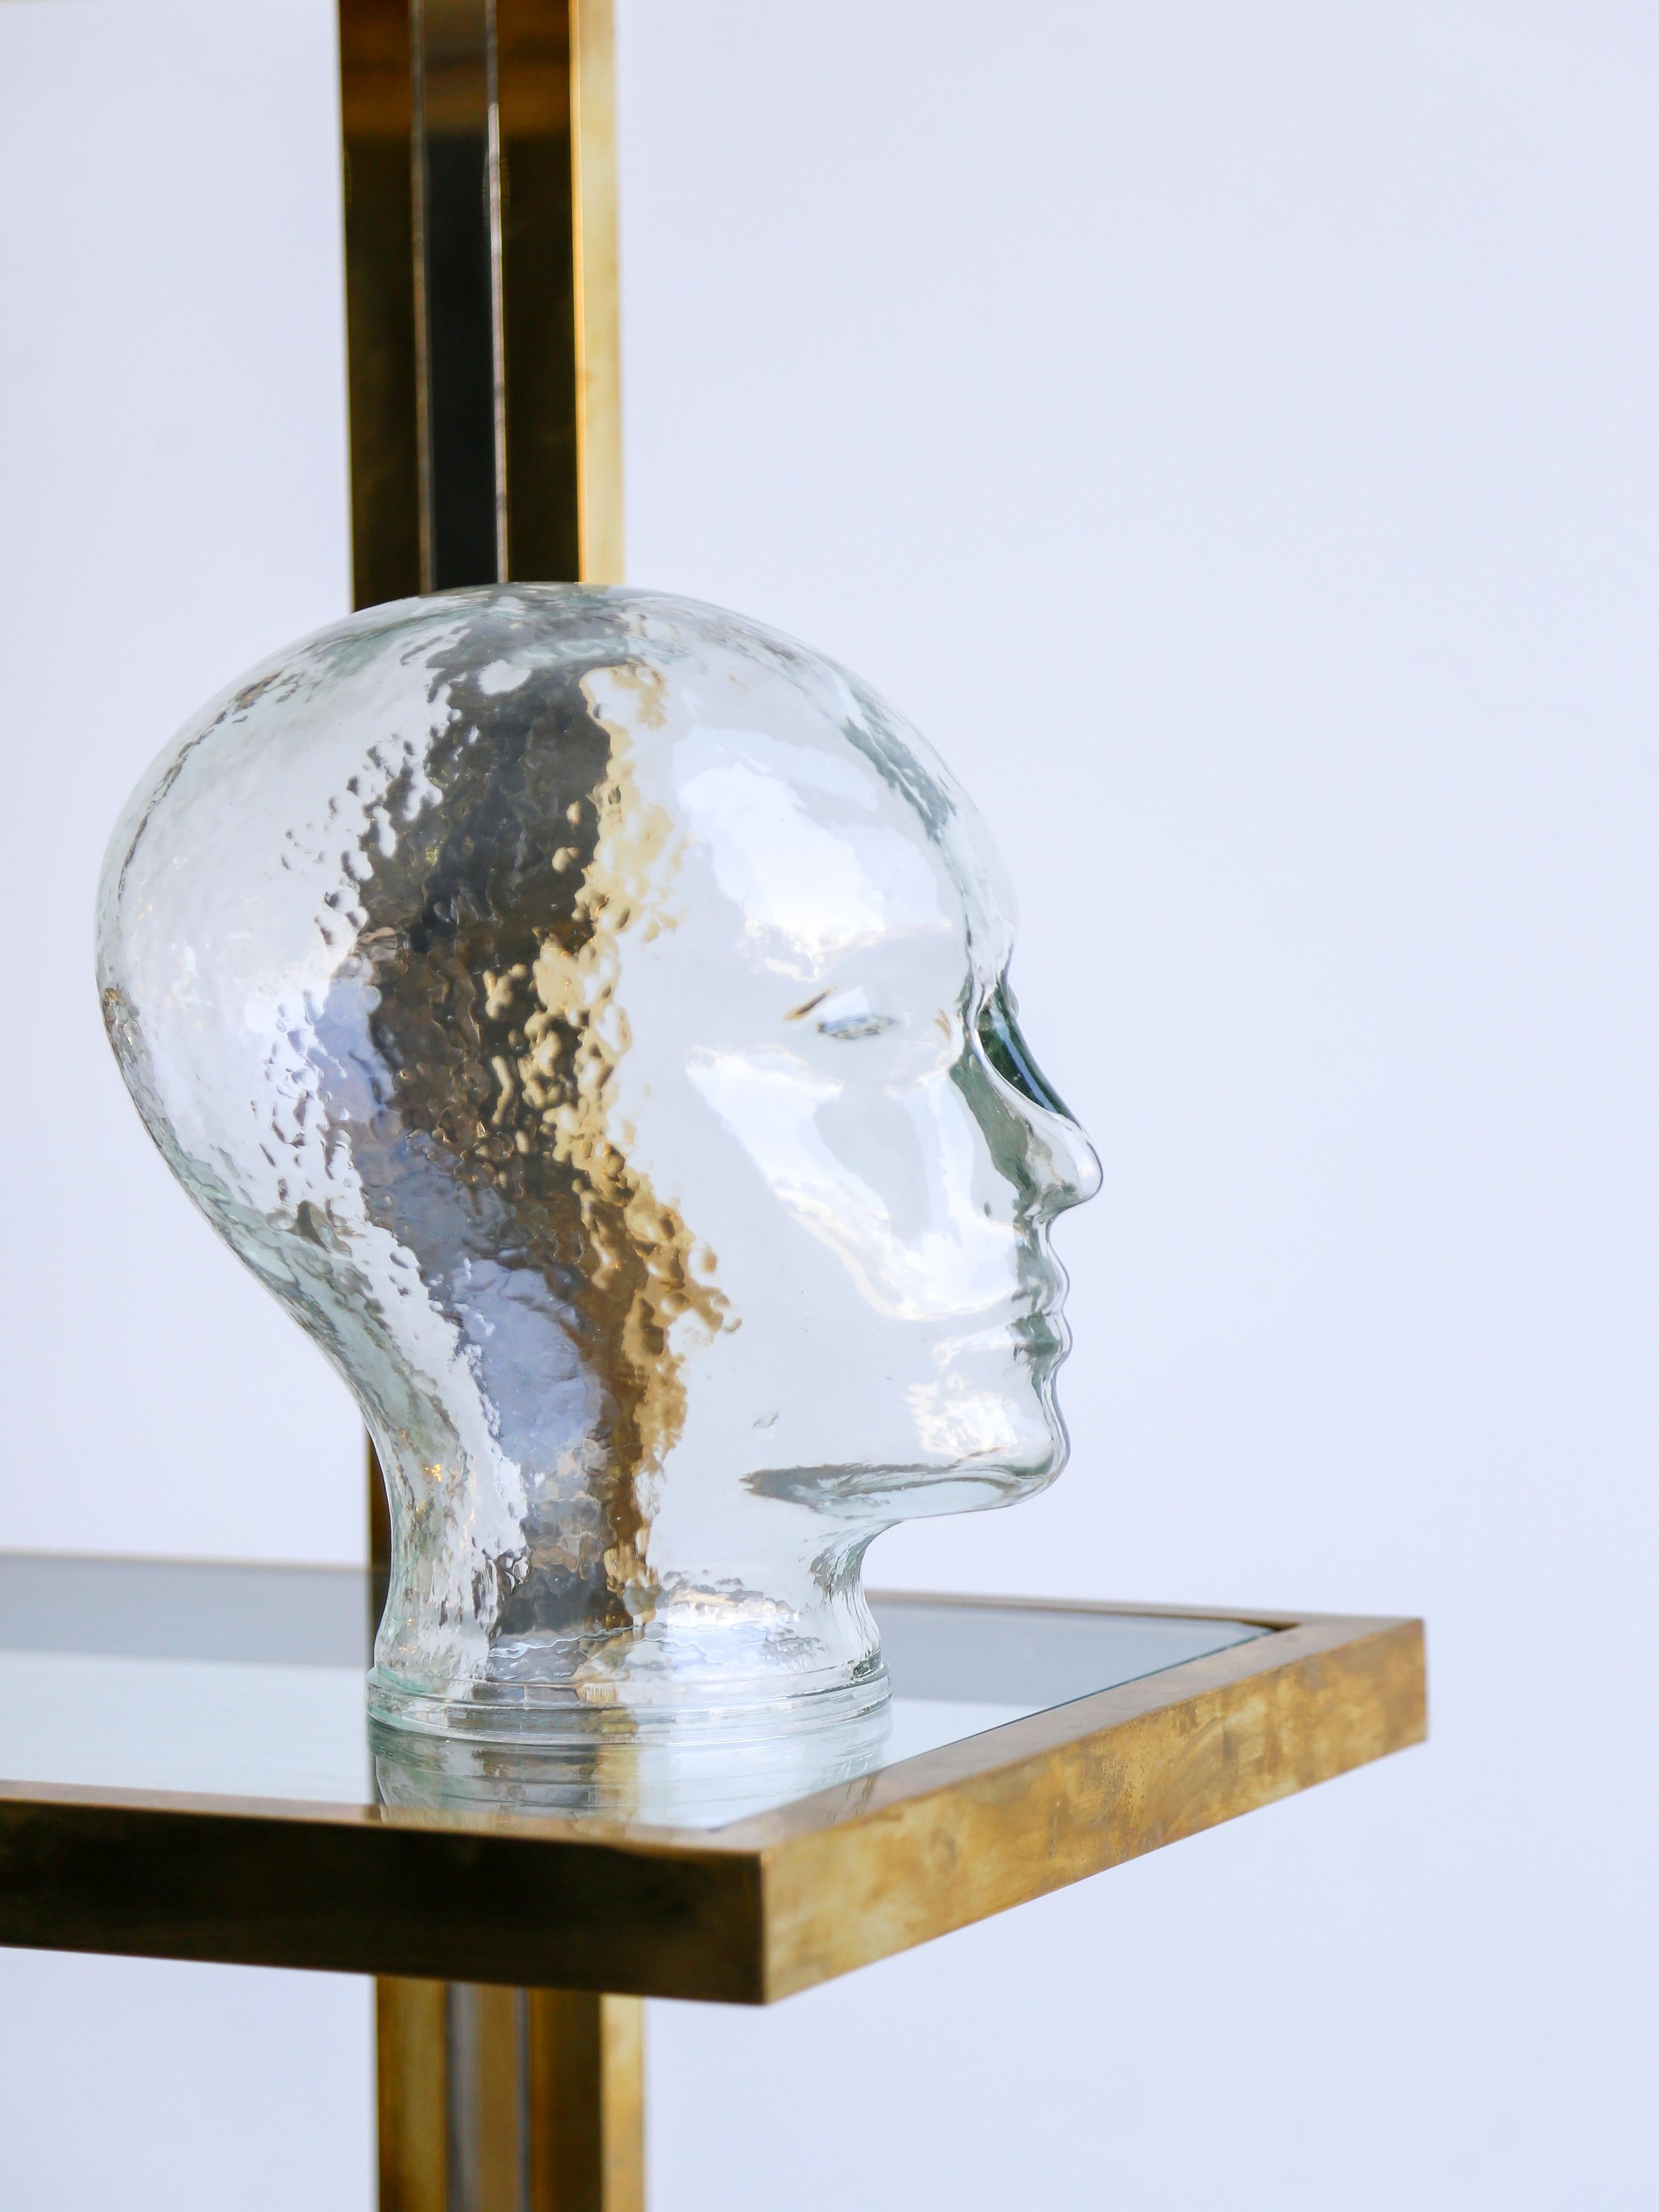 Mid Century Modern Kristallglas Kopf Tisch Skulptur von dem berühmten Piero Fornasetti. 

Piero Fornasetti (1913-1988) war ein italienischer Designer und Künstler, der für seine kreativen und skurrilen Entwürfe in verschiedenen Bereichen bekannt